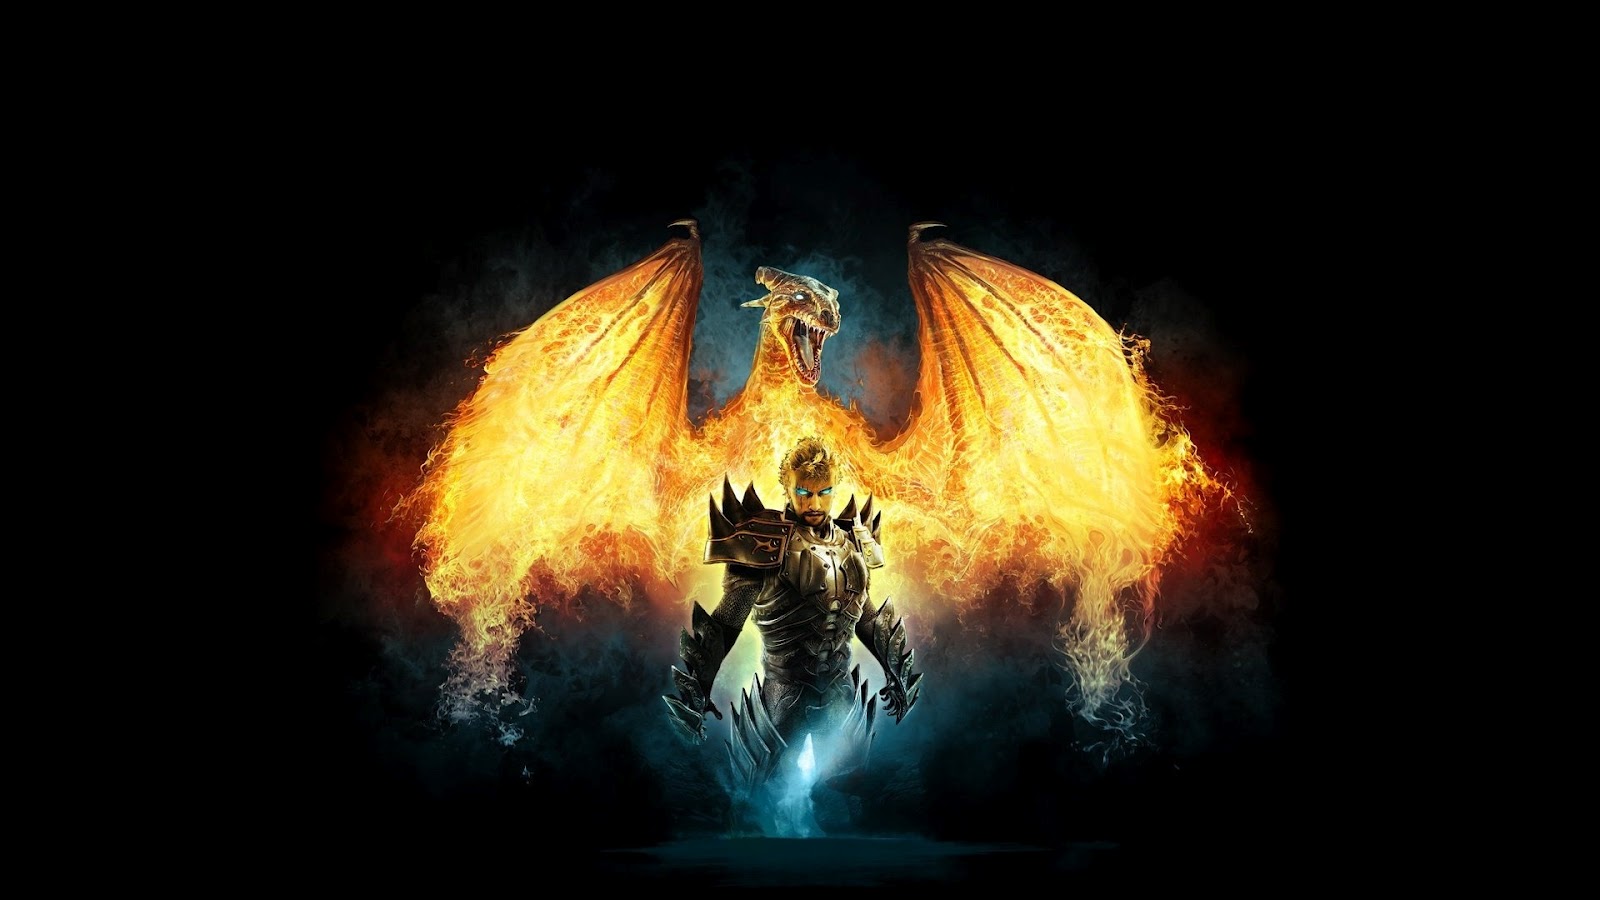 fond d'écran dragon hd 1080p,flamme,ténèbres,démon,feu,oeuvre de cg